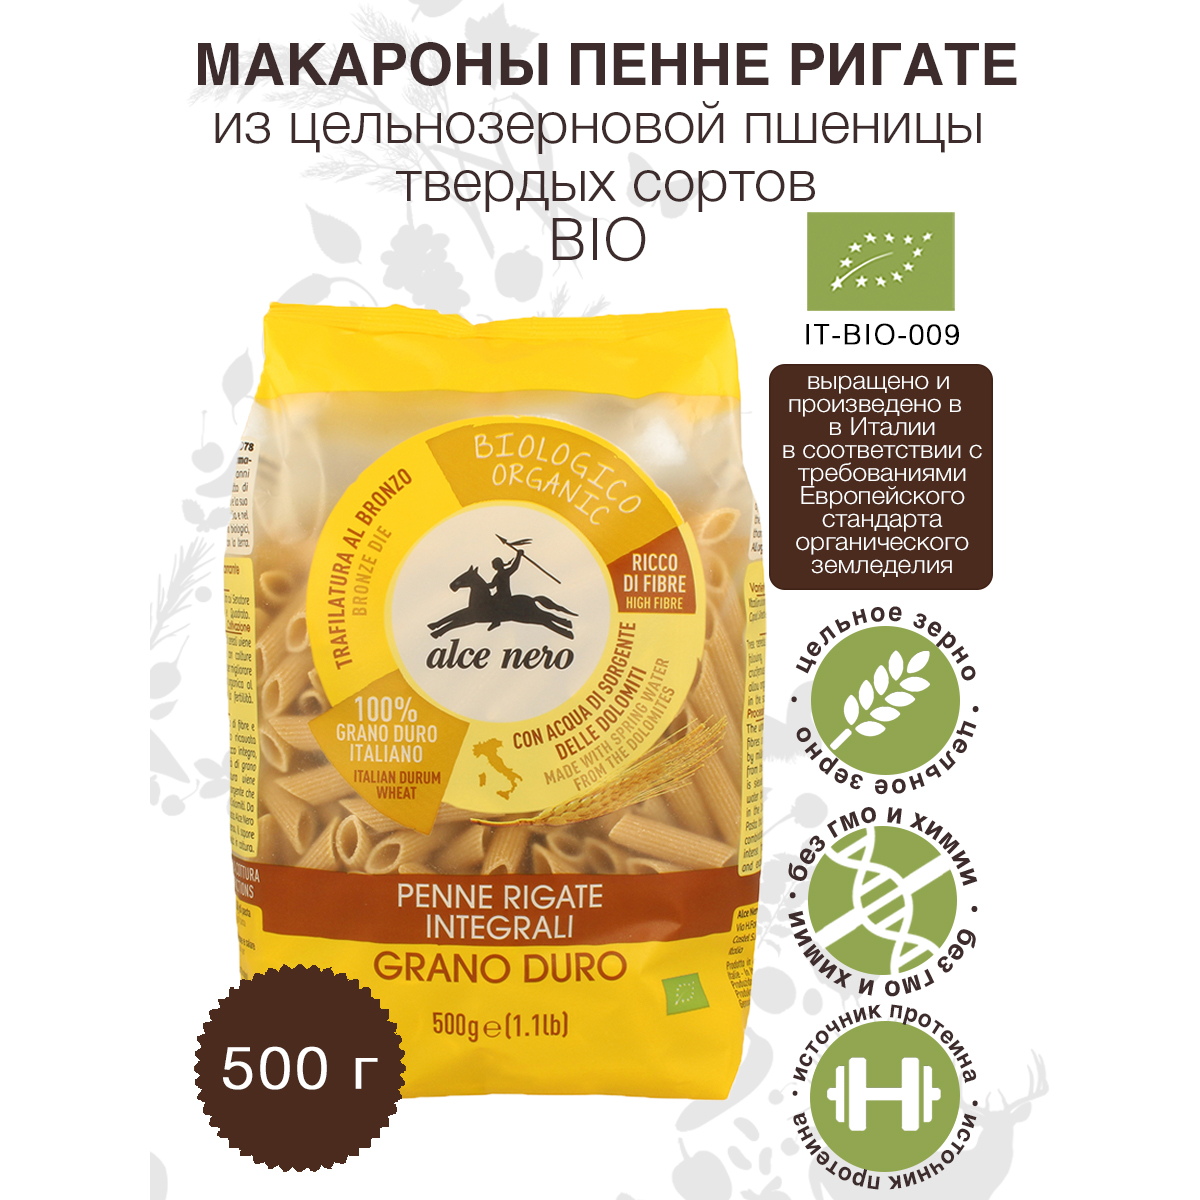 Макаронные изделия пенне ригате ALCE NERO из пшеницы твердых сортов БИО, 500 г